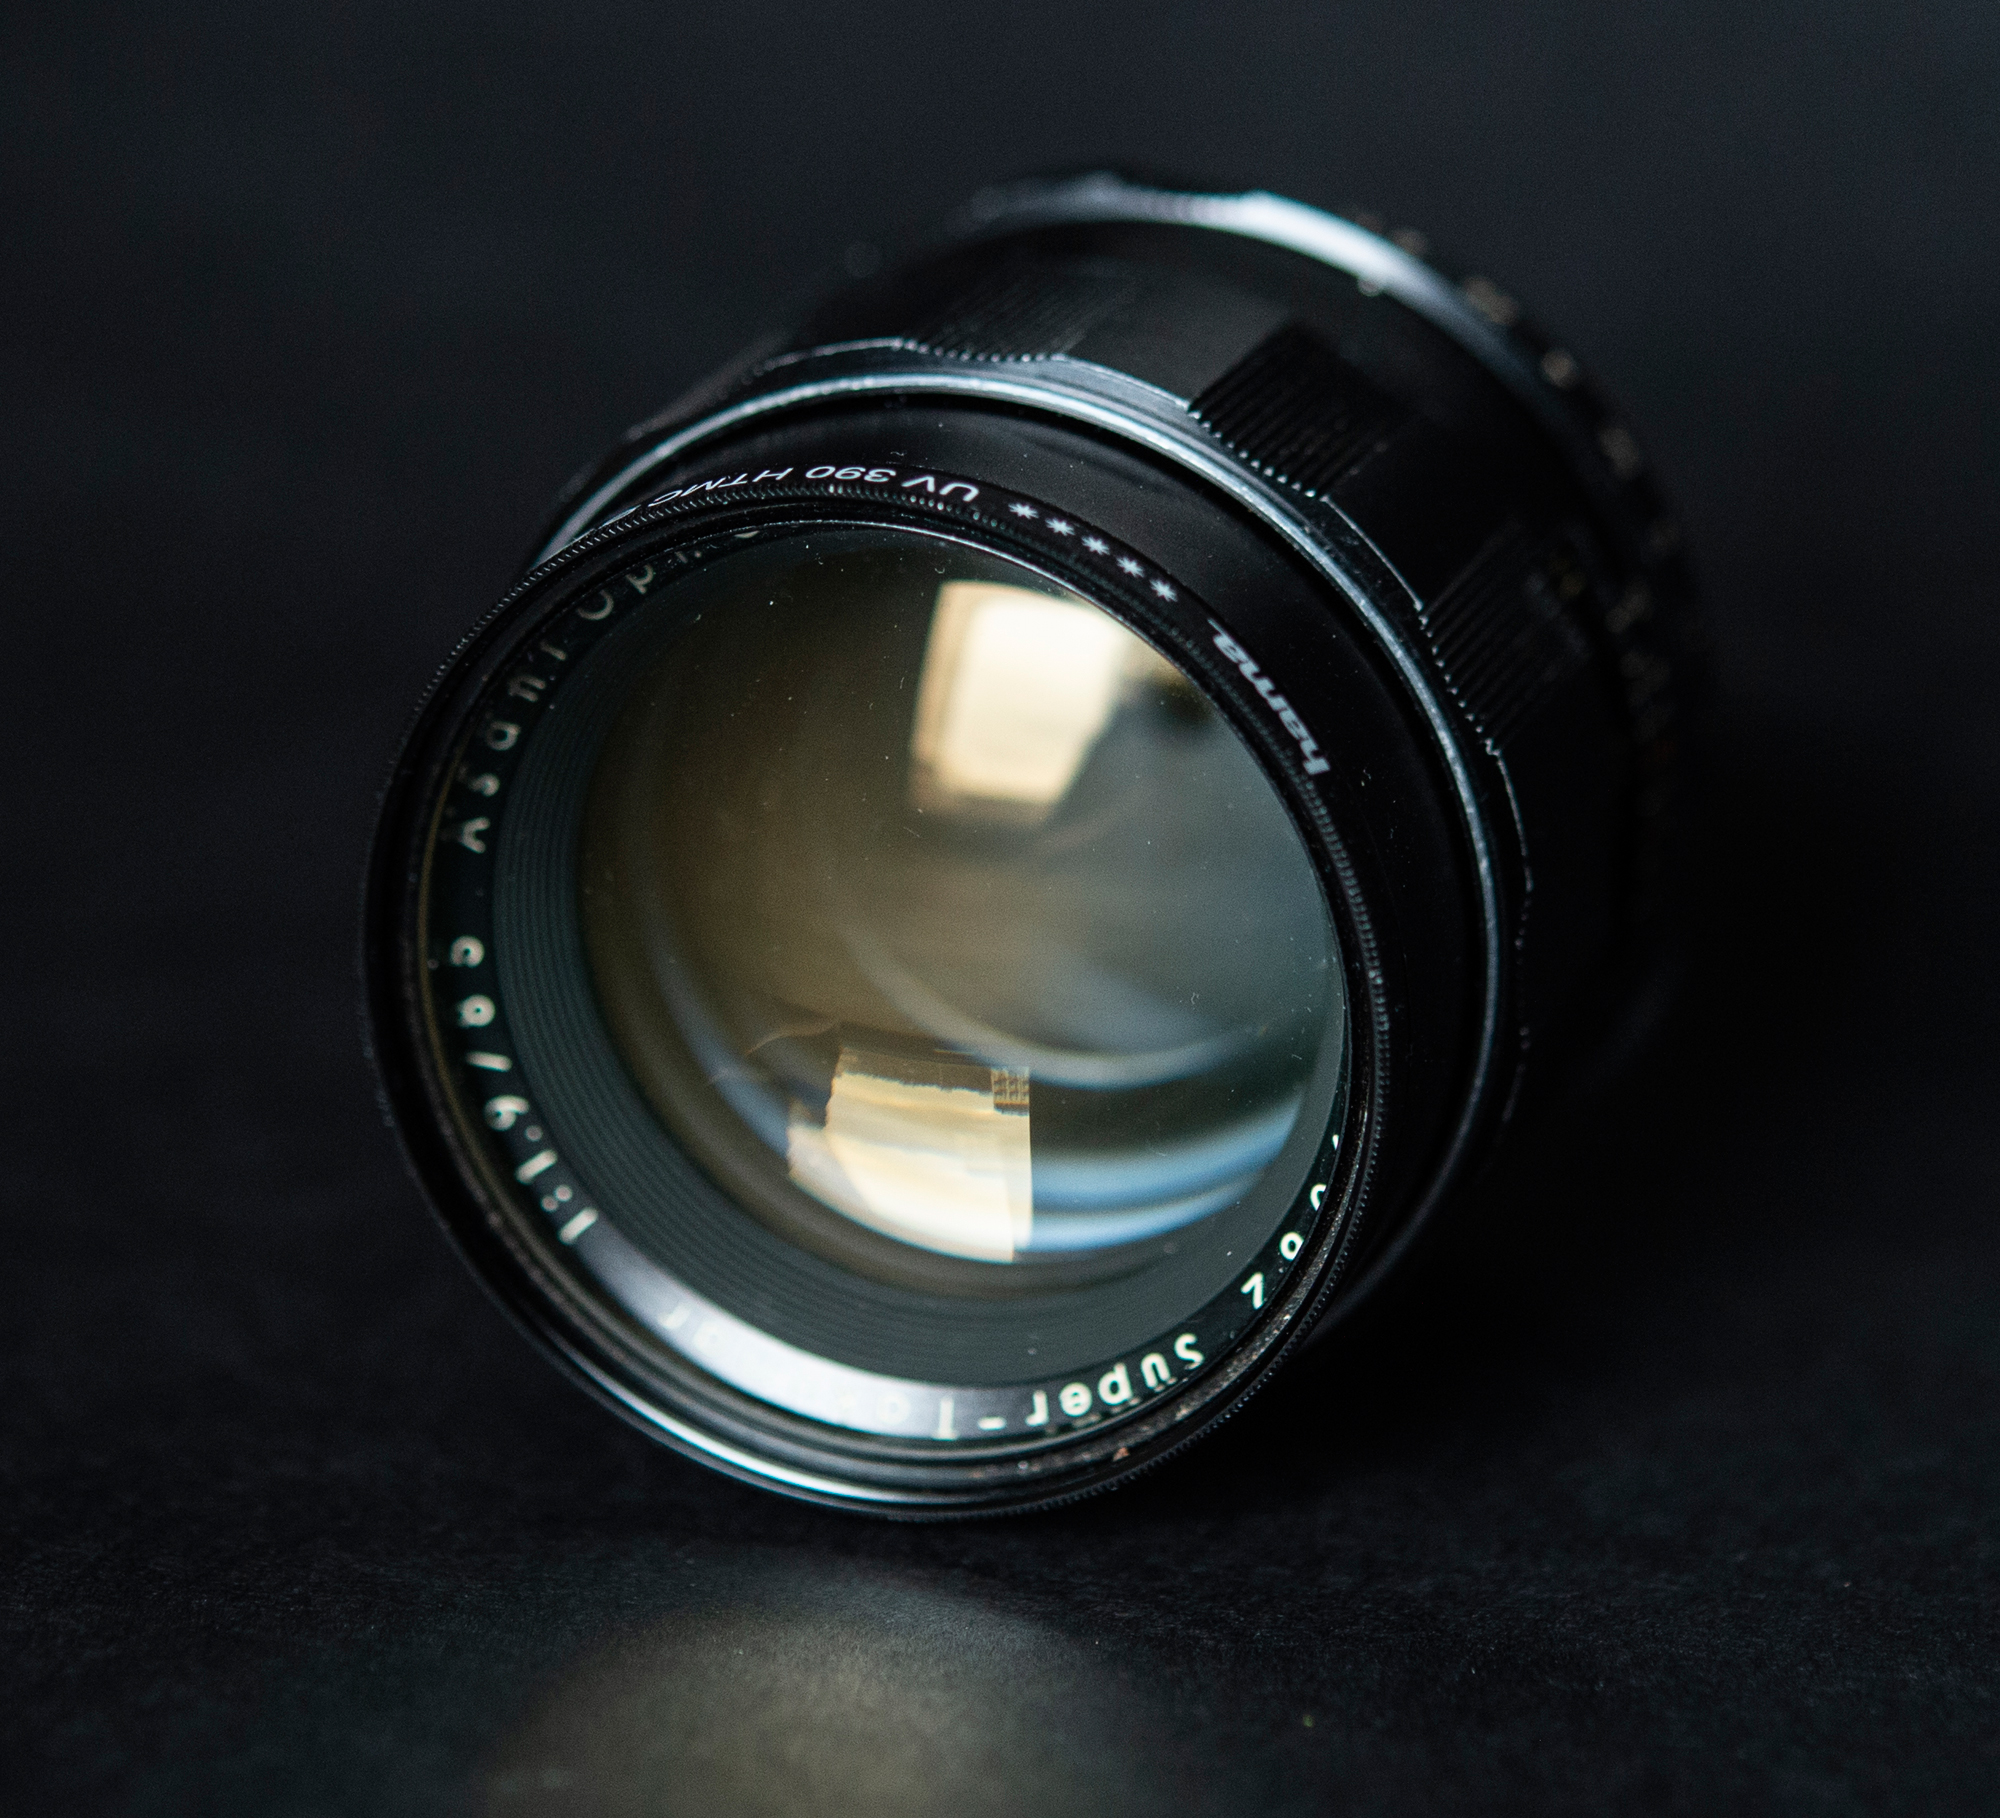 Rzadki do dostania obiektyw M42 Super-Takumar 85mm F1.9 - zdjęcia przykładowe na Nikon Z7 II